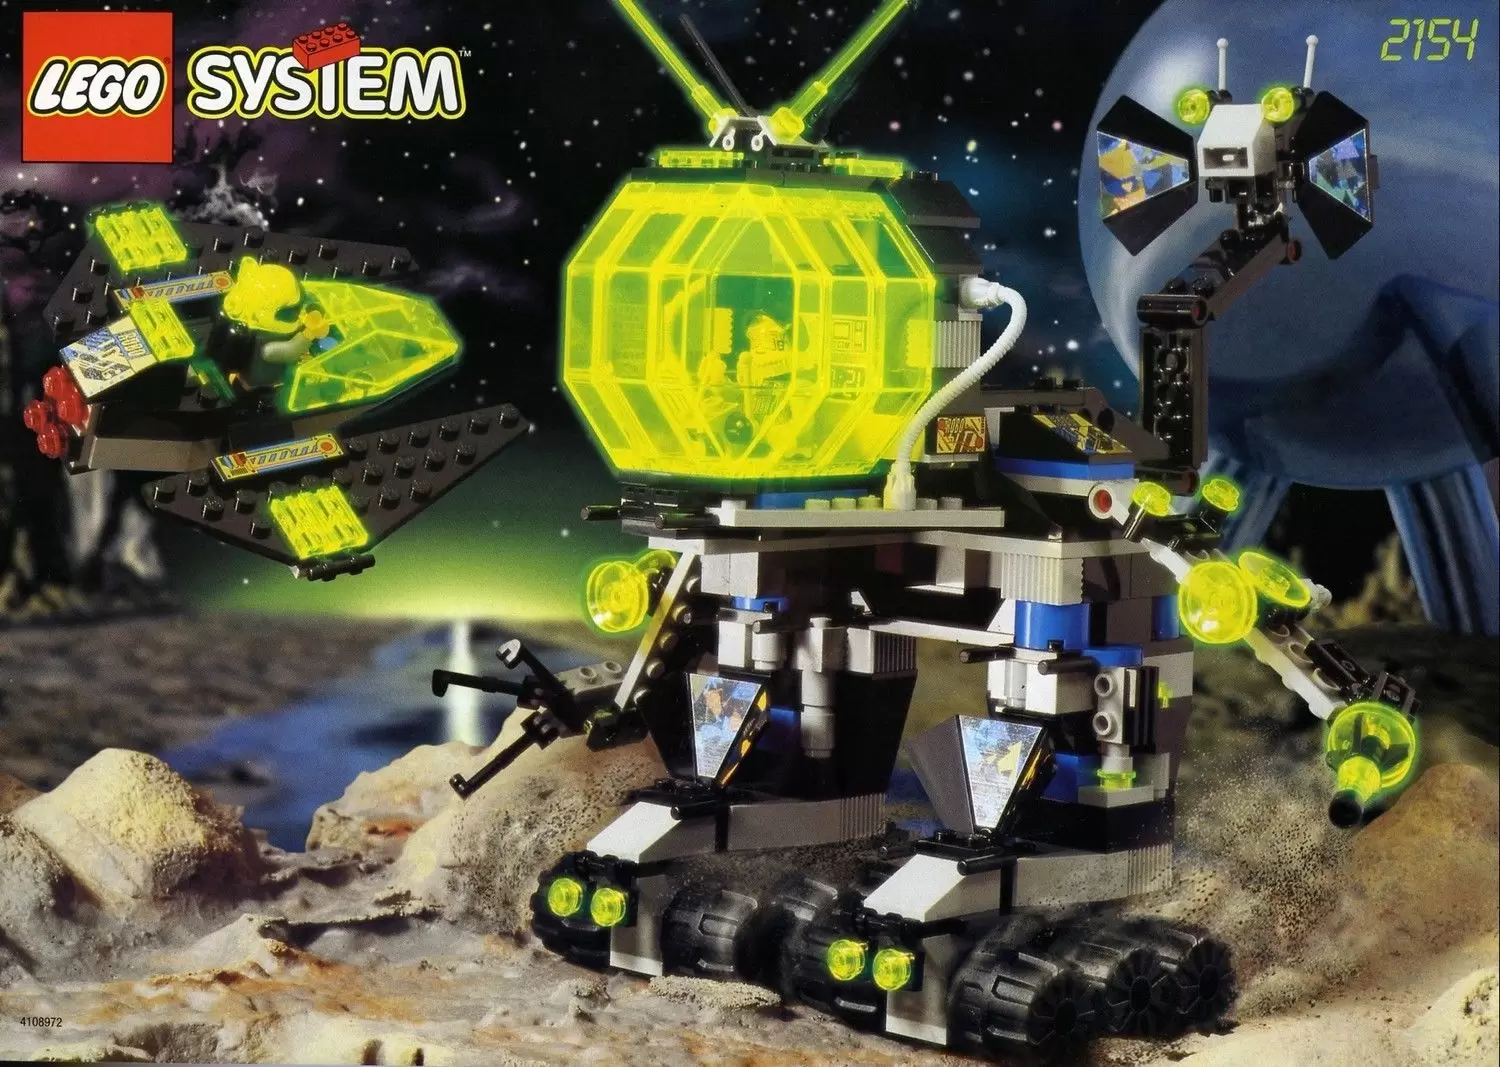 LEGO Space - Robo Master